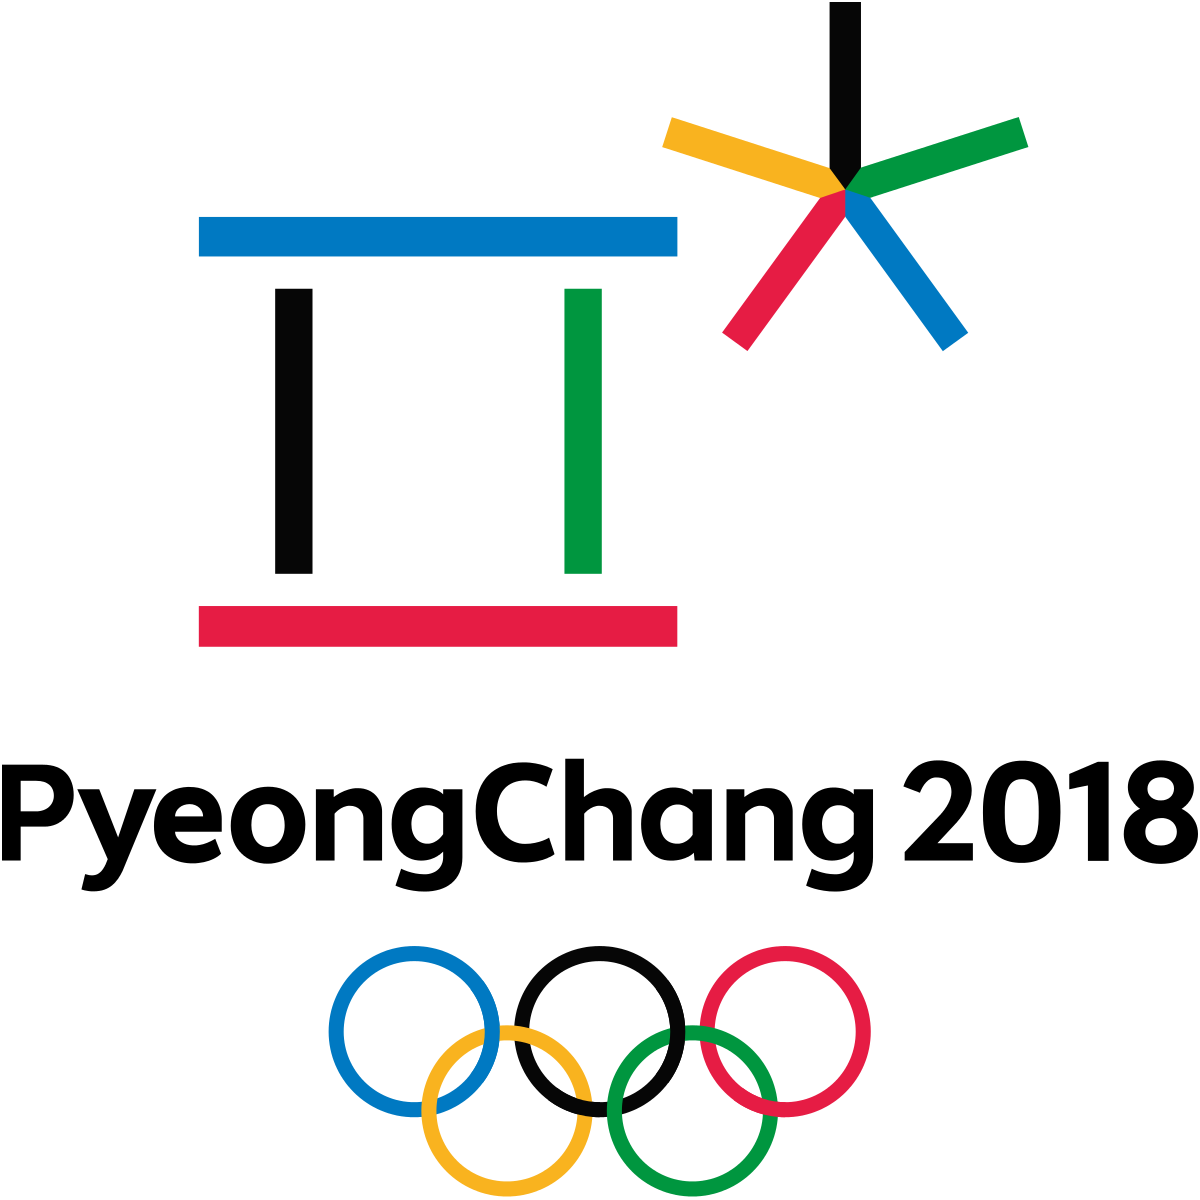 Olimpiadi Invernali di PyeongChang 2018. Le previsioni danno all'Italia 4 ori